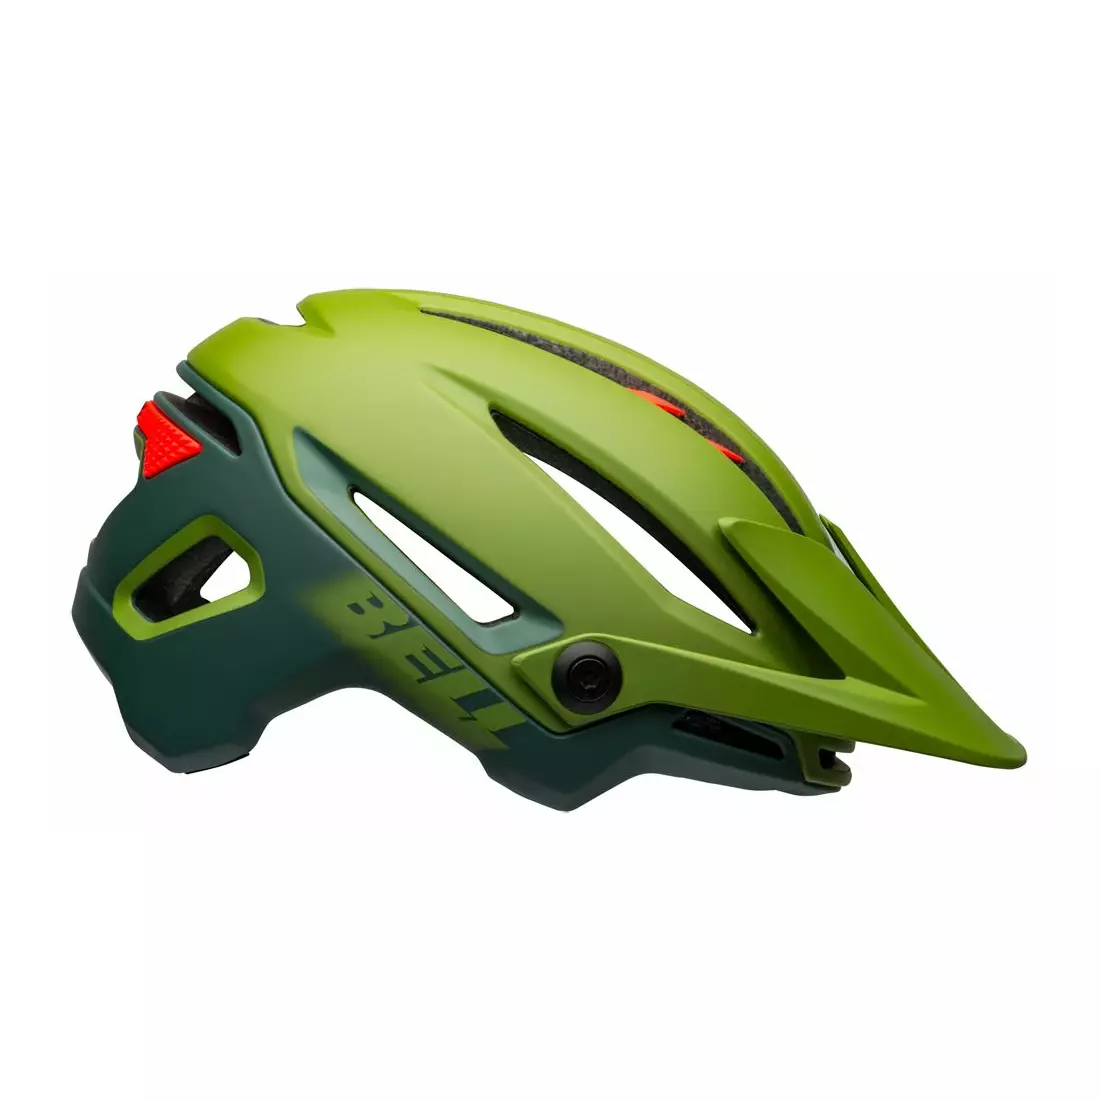 BELL casca de bicicleta mtb SIXER INTEGRATED MIPS, matte gloss green infrared 